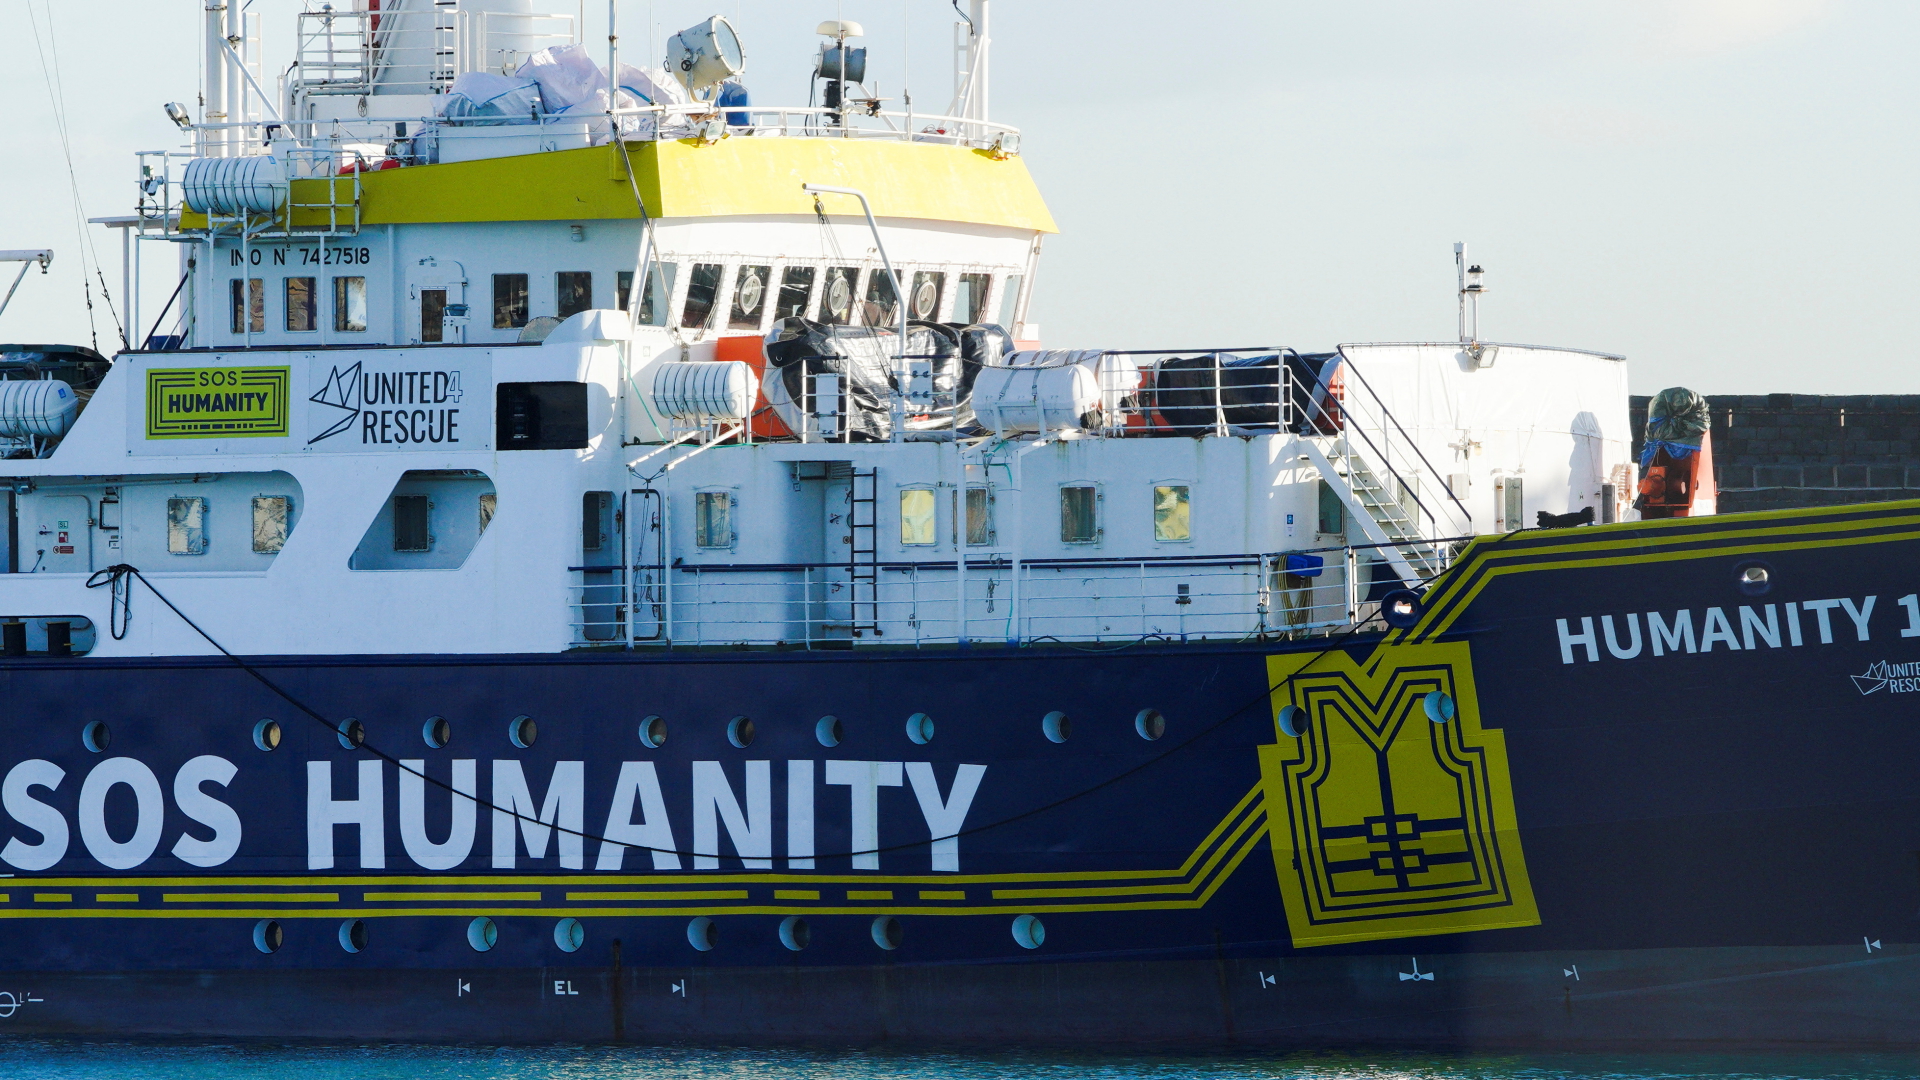 Soccorso in mare al largo dell’Italia: sciopero della fame in “Humanity 1”